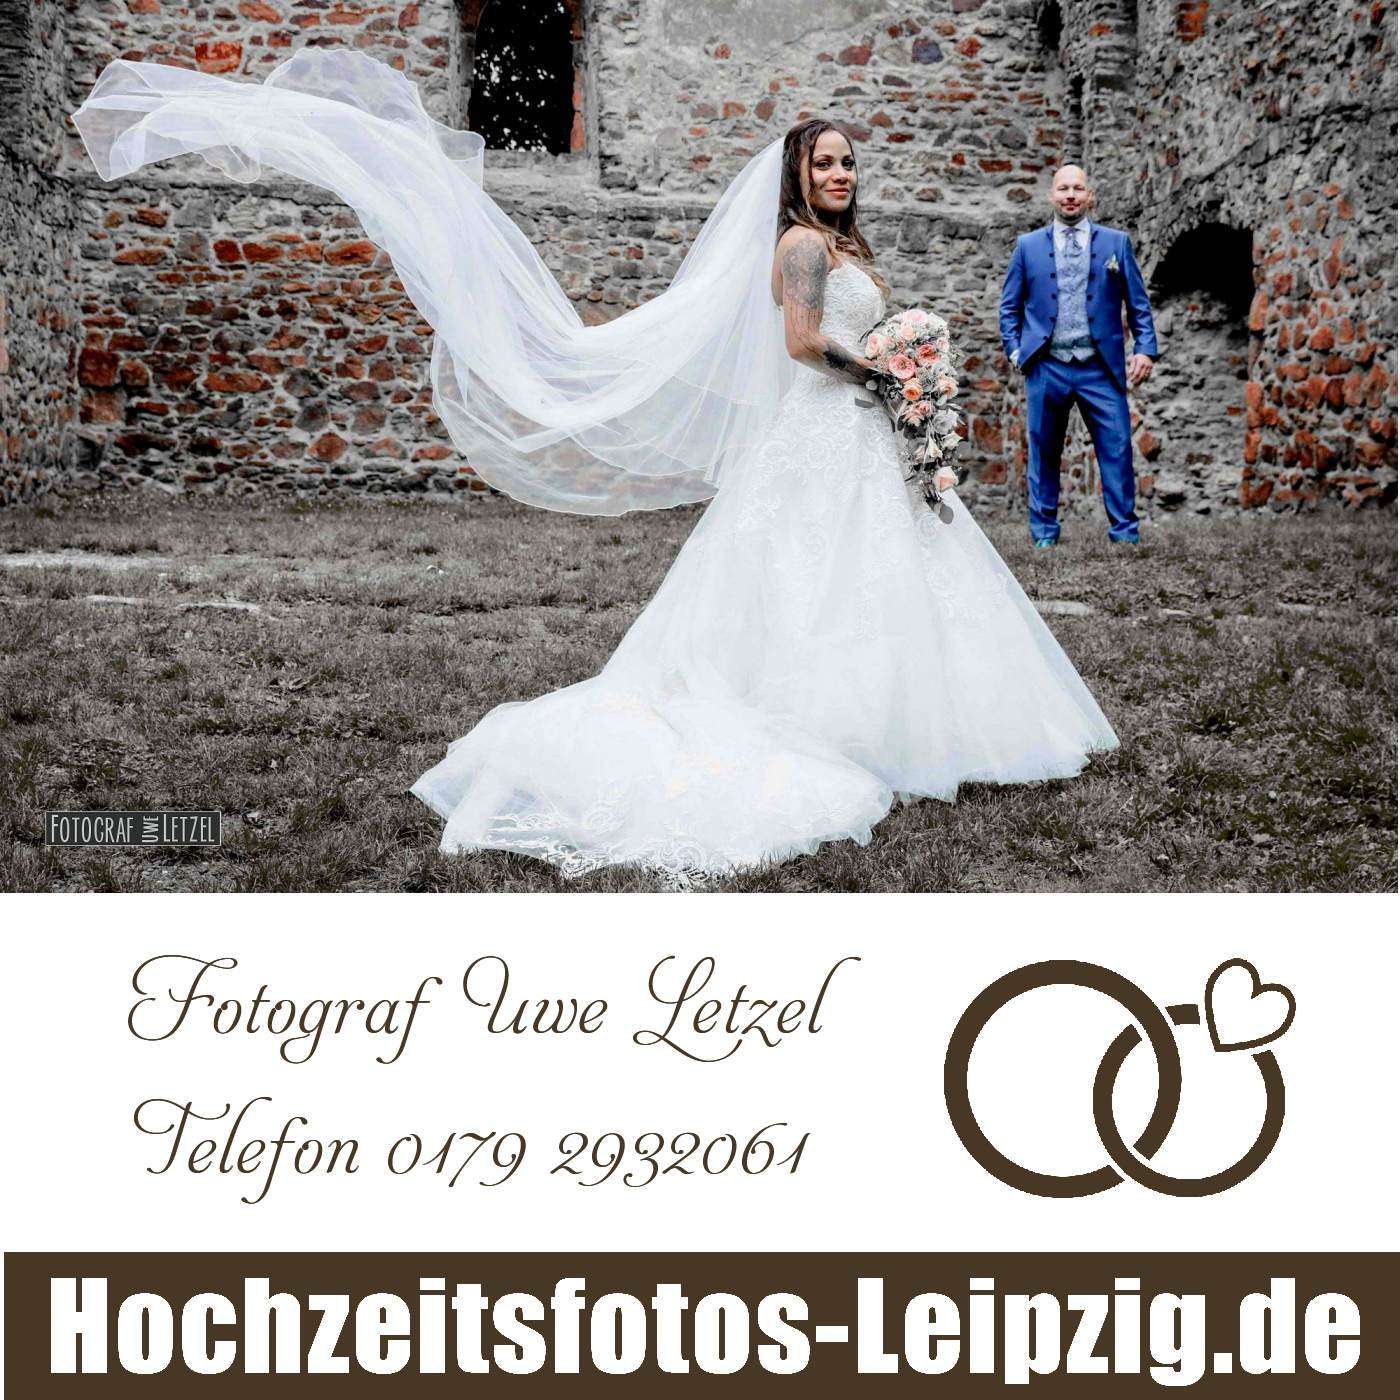 Fotograf zur Hochzeit in Schkopau buchen